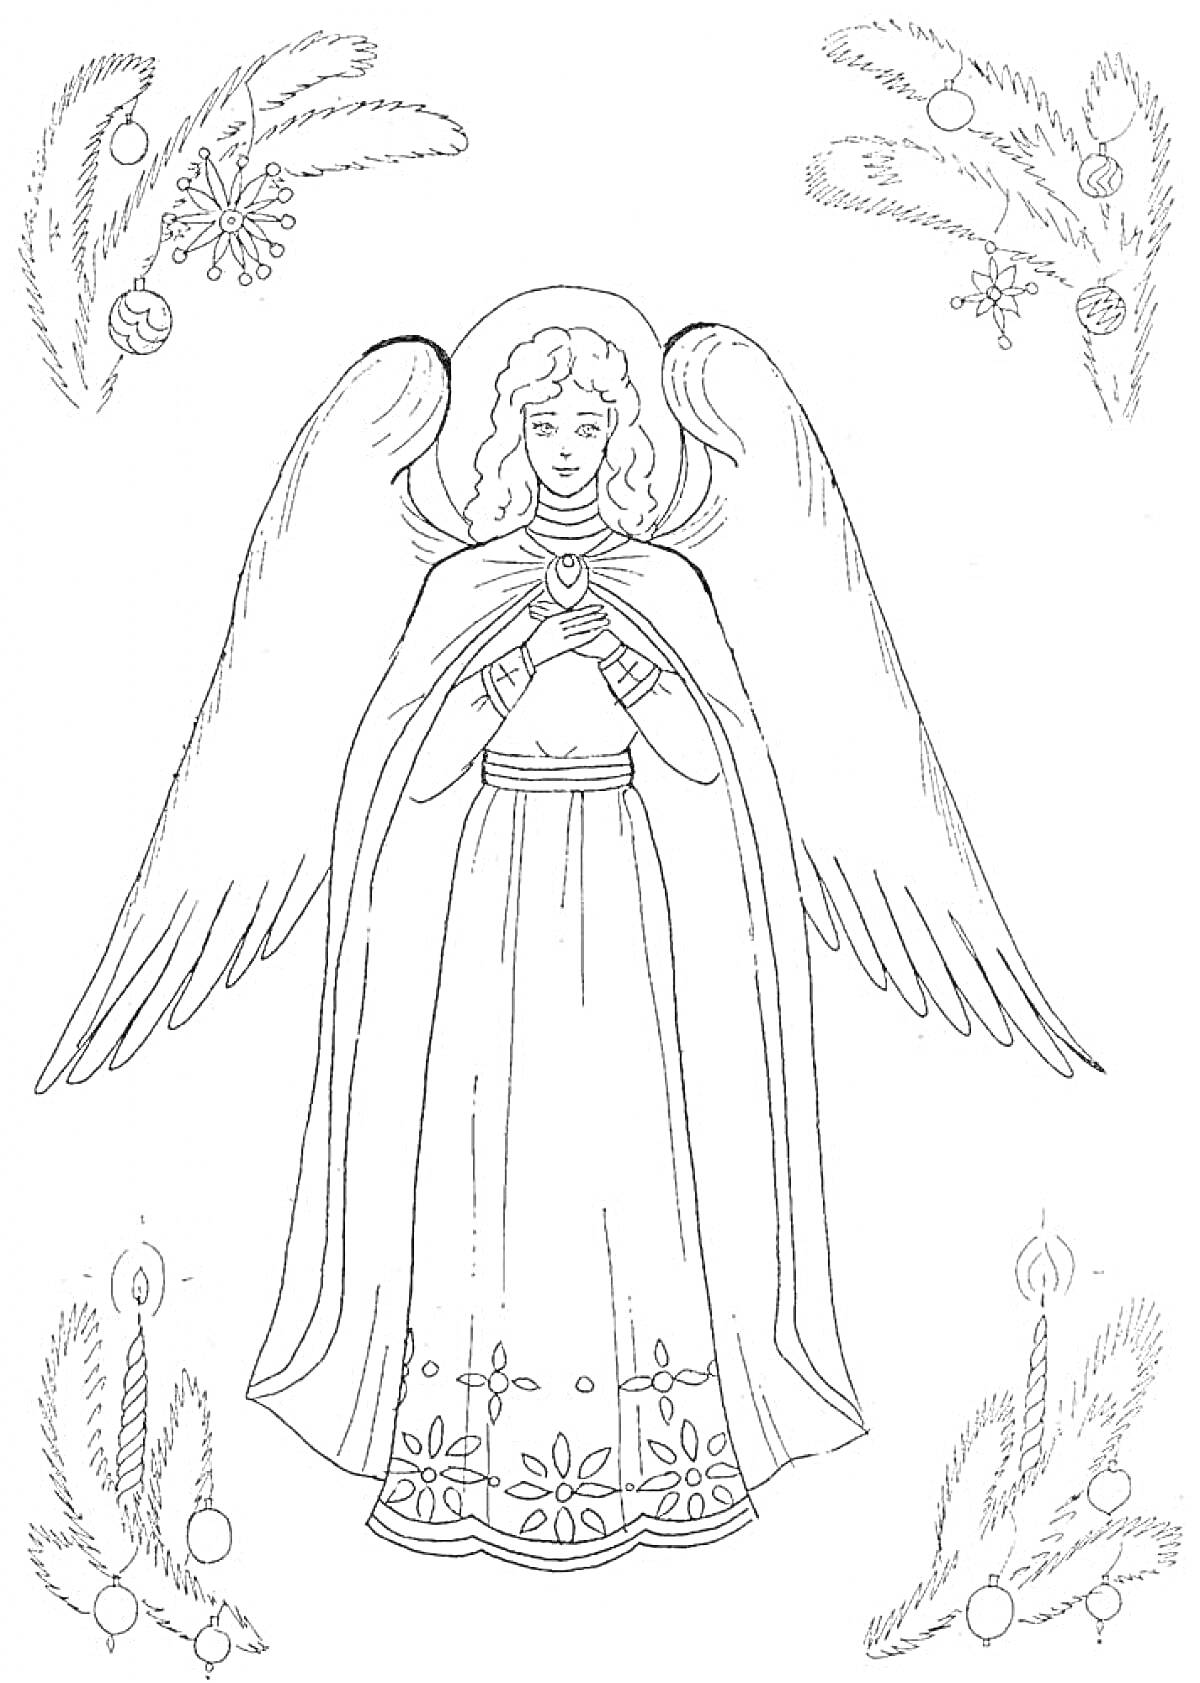 Рождественский ангел с простертыми крыльями, в длинном платье, украшенном снежинками и цветами. В углах - новогодние елочные украшения и ветви.